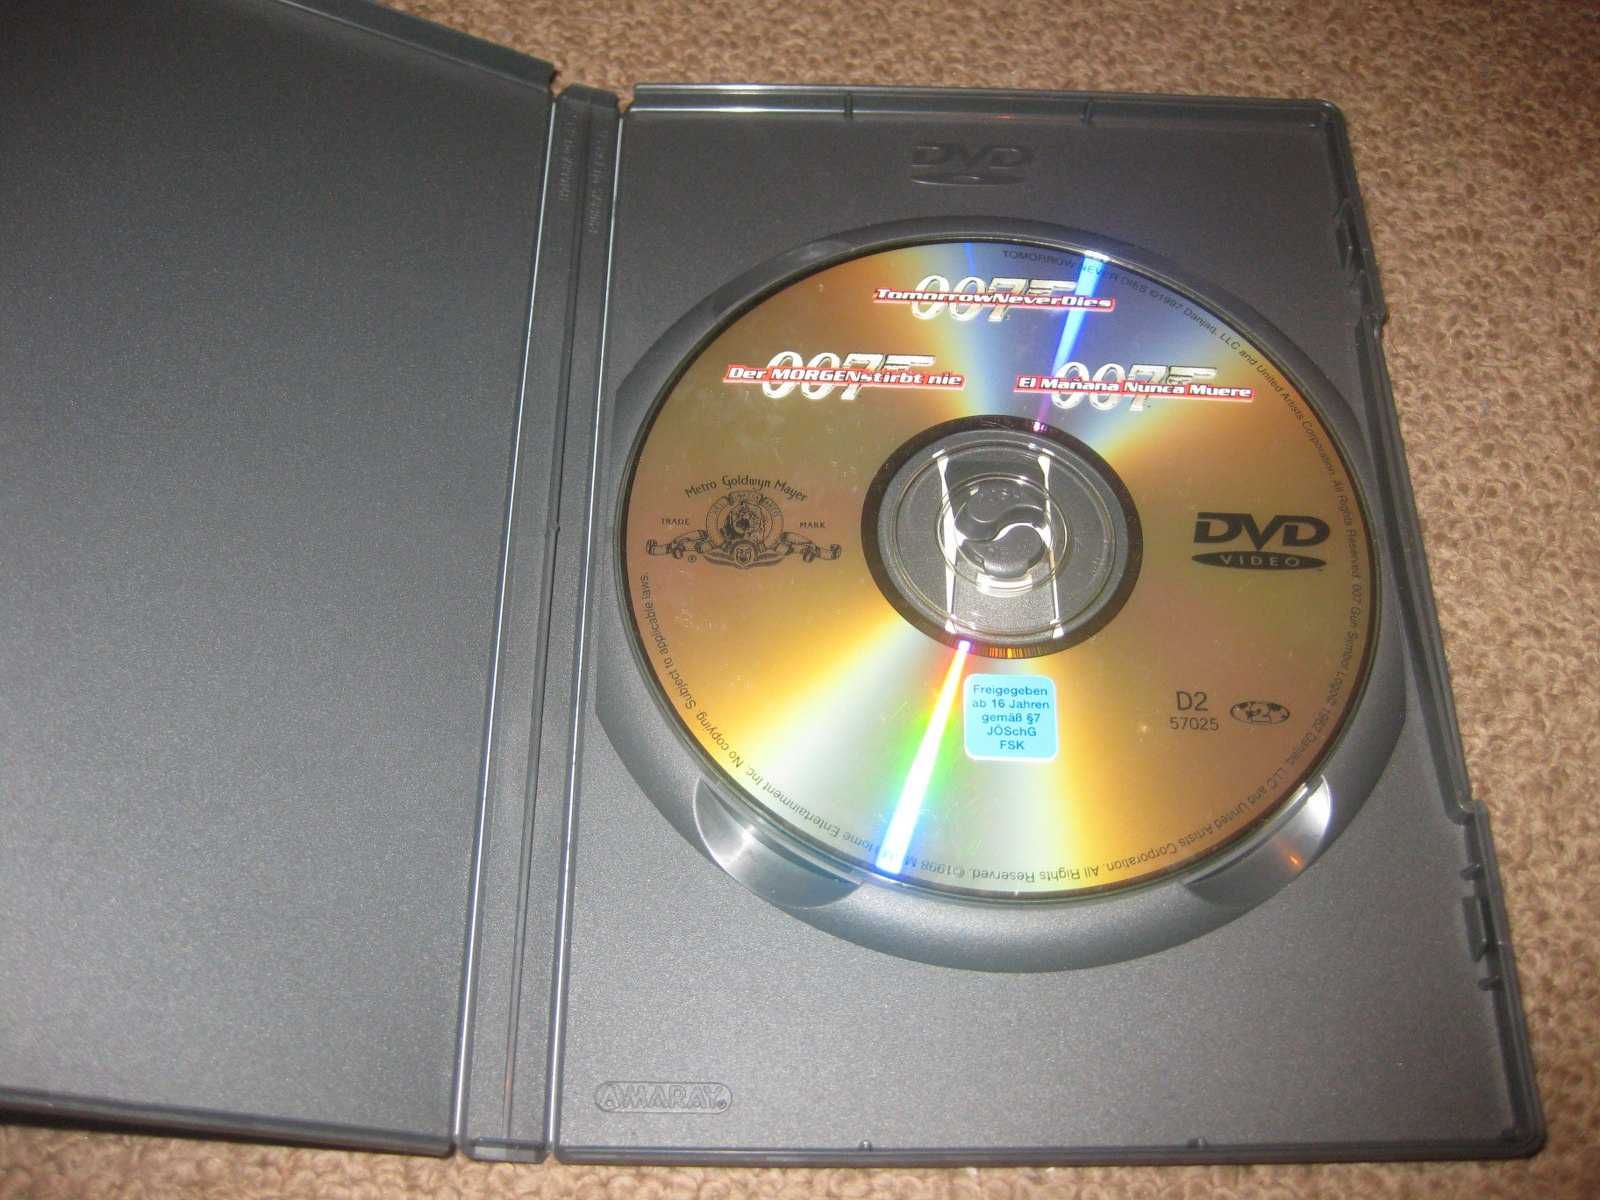 DVD "007-O Amanhã nunca Morre" com Pierce Brosnan